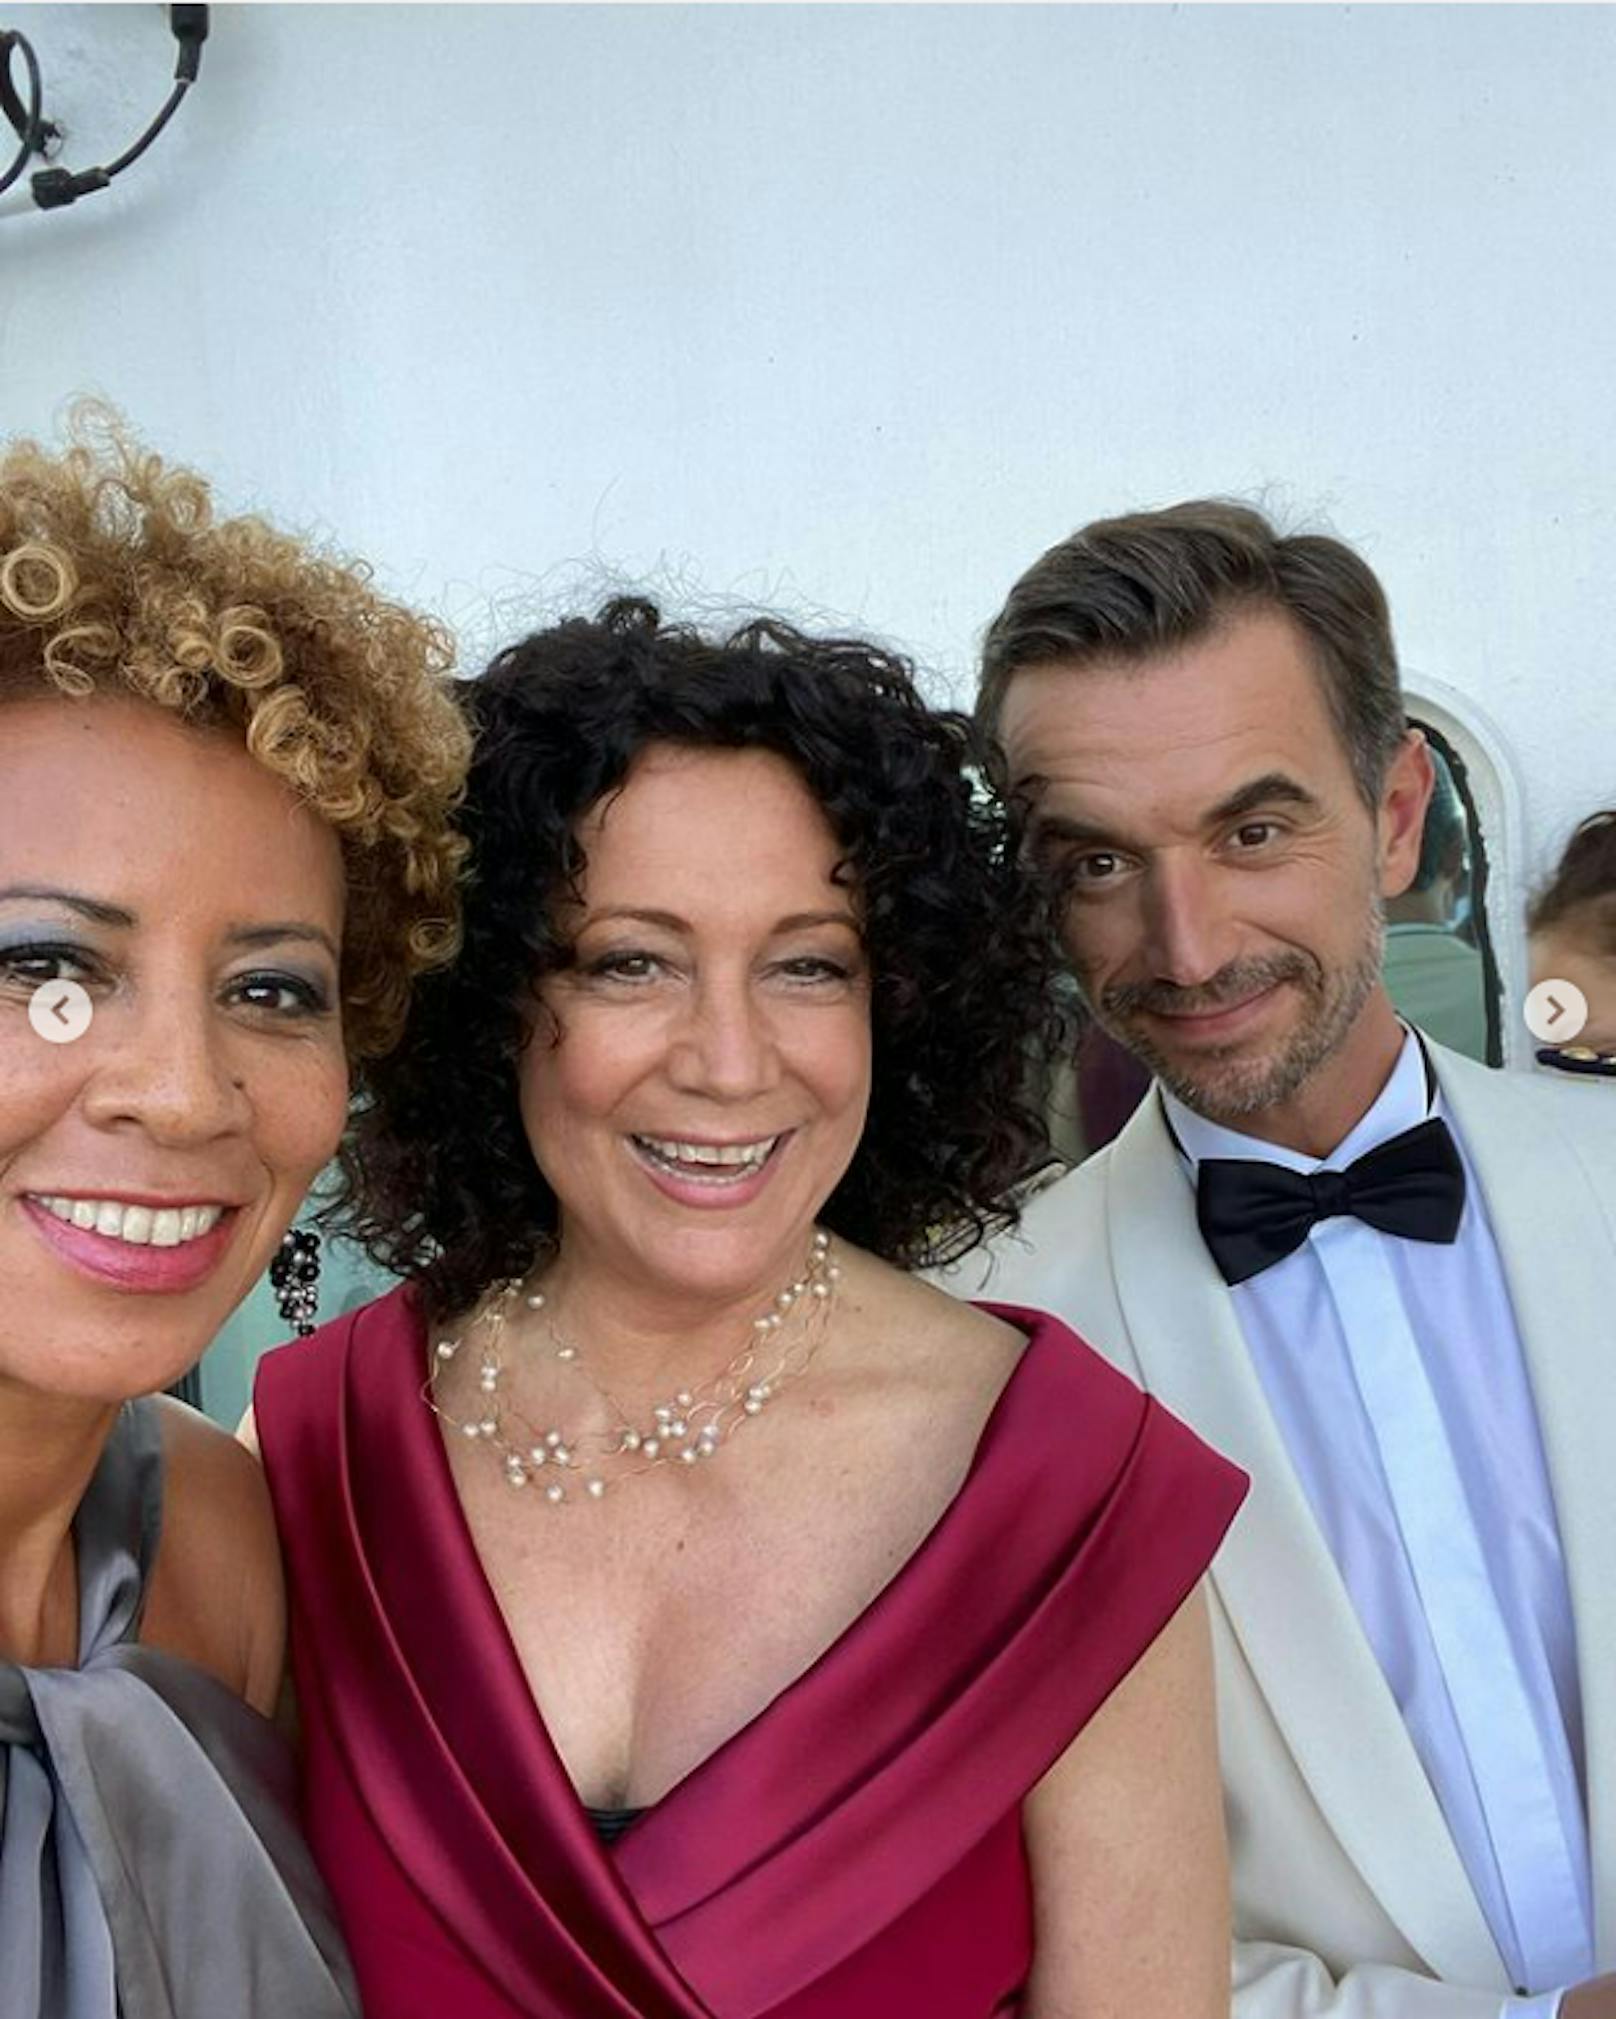 Ein Crew-Selfie muss sein: Arabella Kiesbauer, Barbara Wussow und Florian Silbereisen